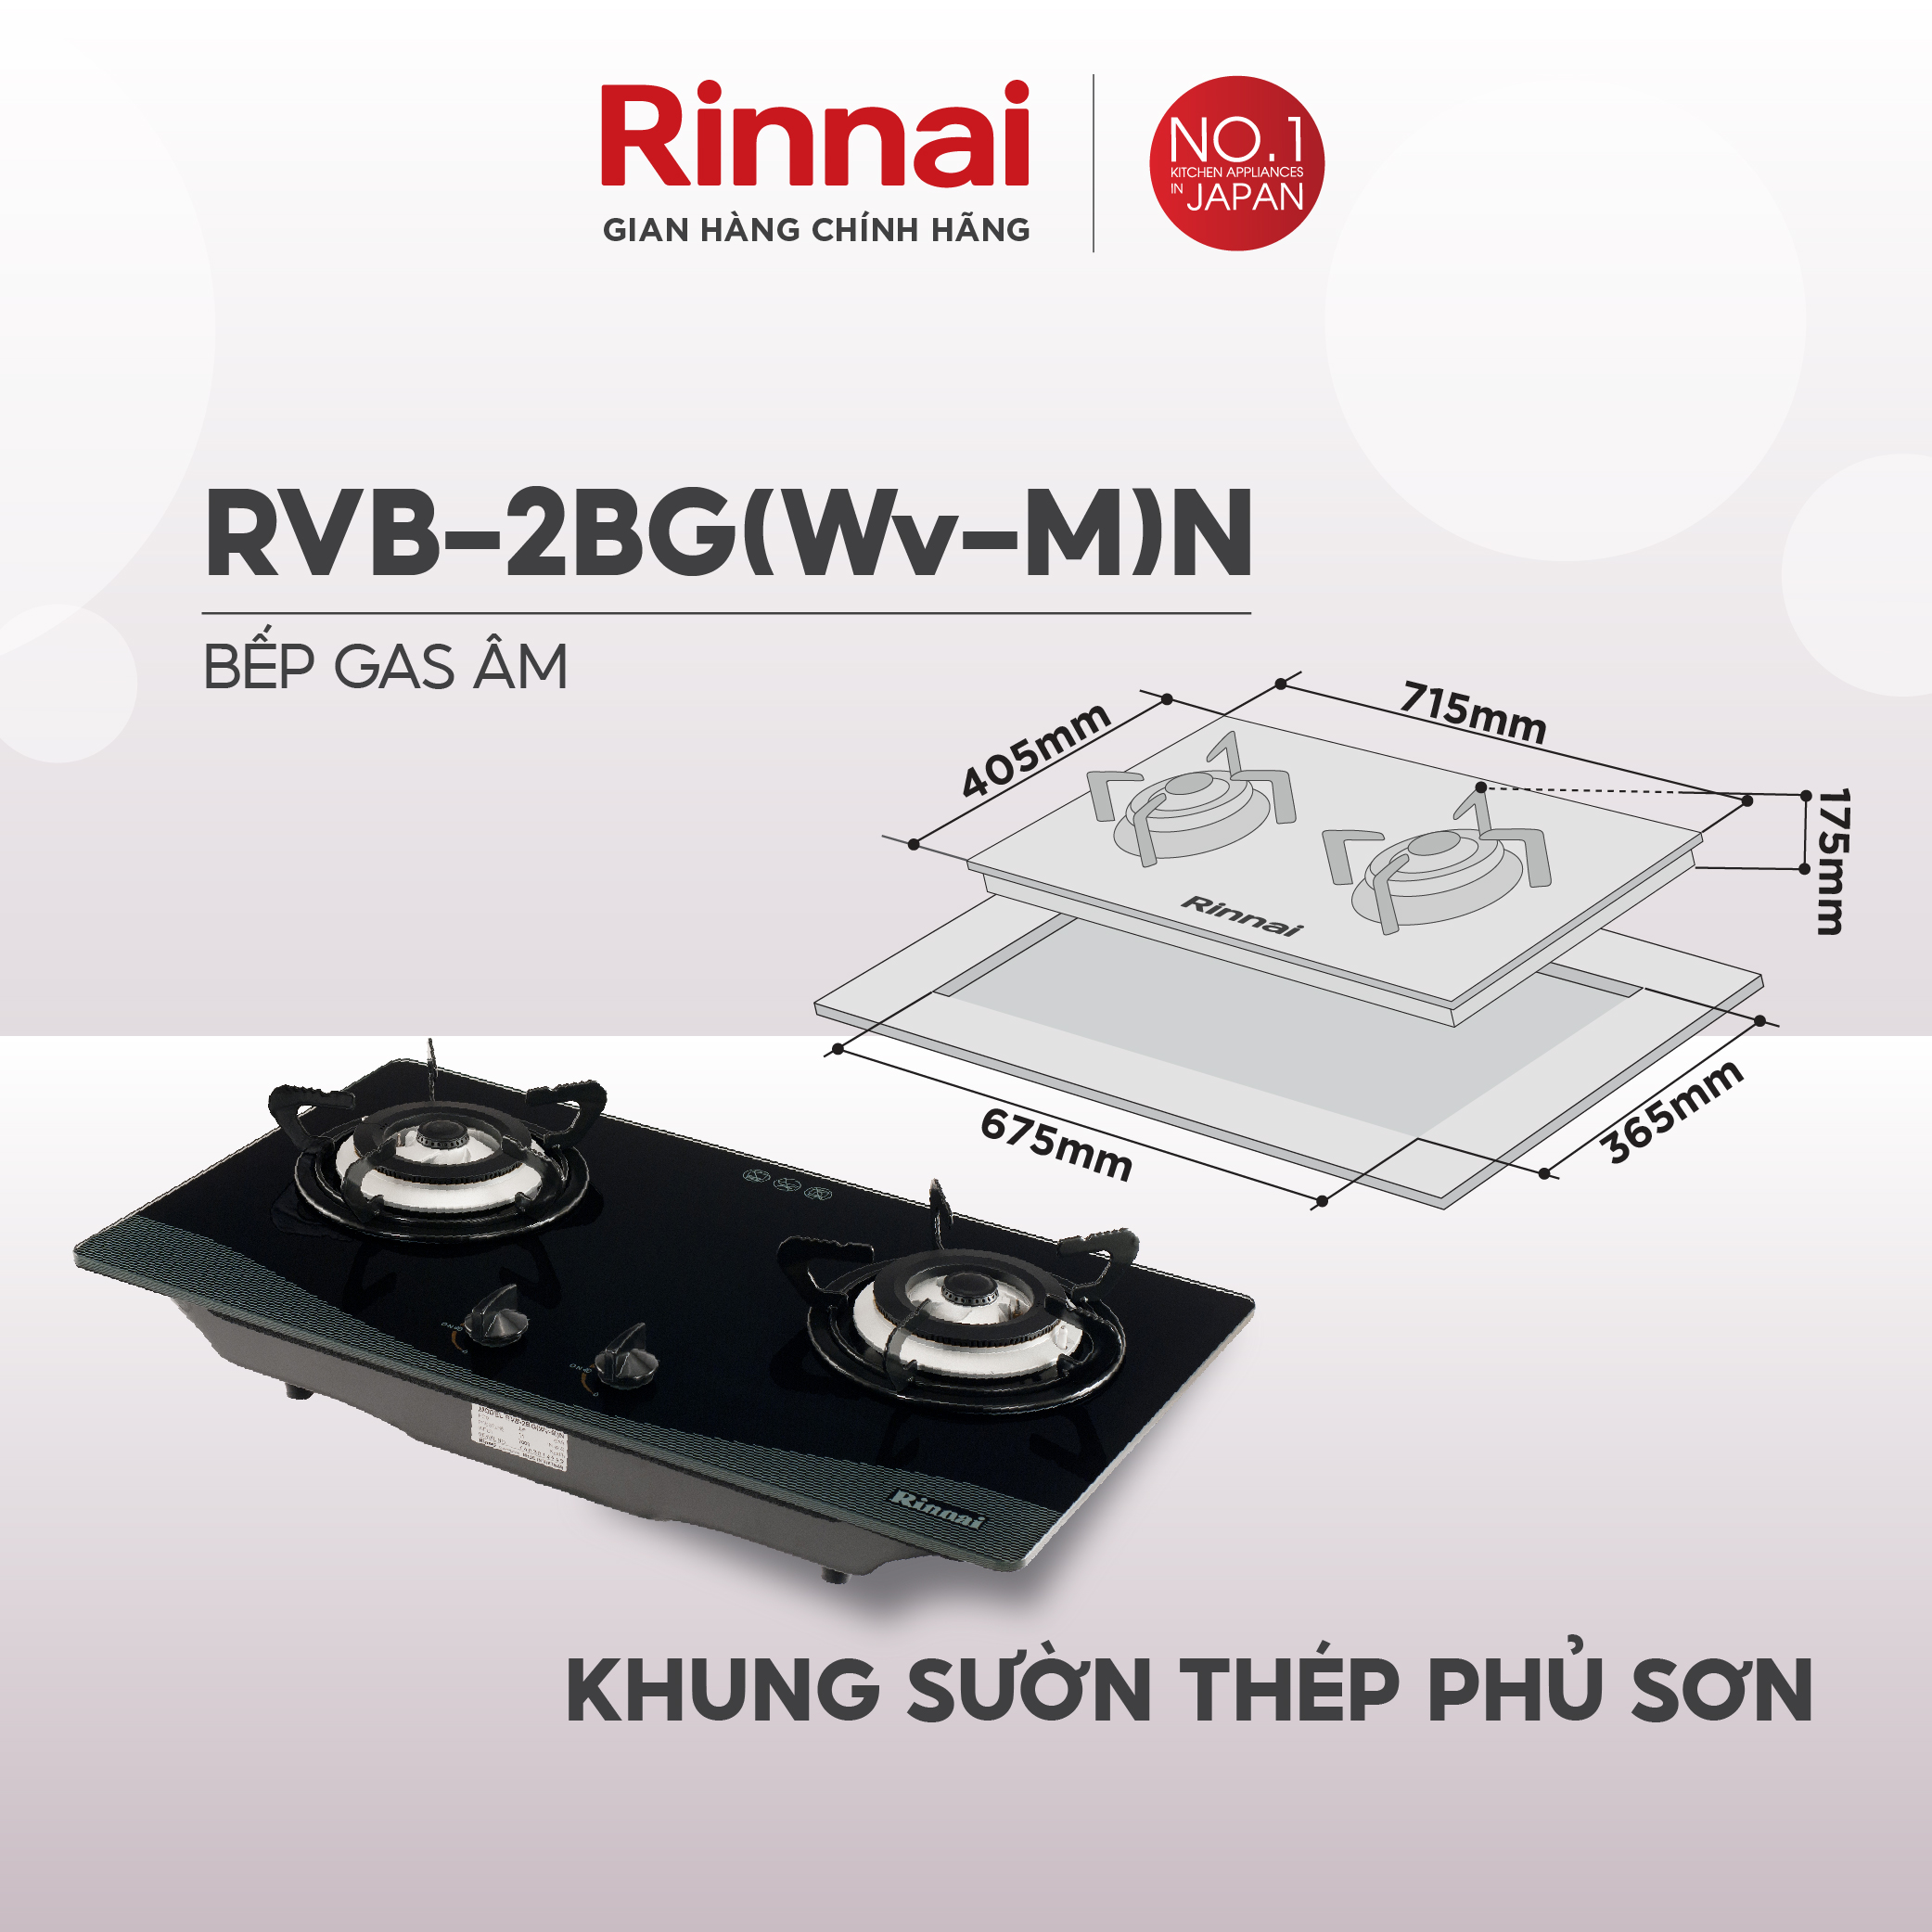 Bếp gas âm Rinnai RVB-2BG(Wv-M)N mặt bếp kính và kiềng bếp men - Hàng chính hãng.